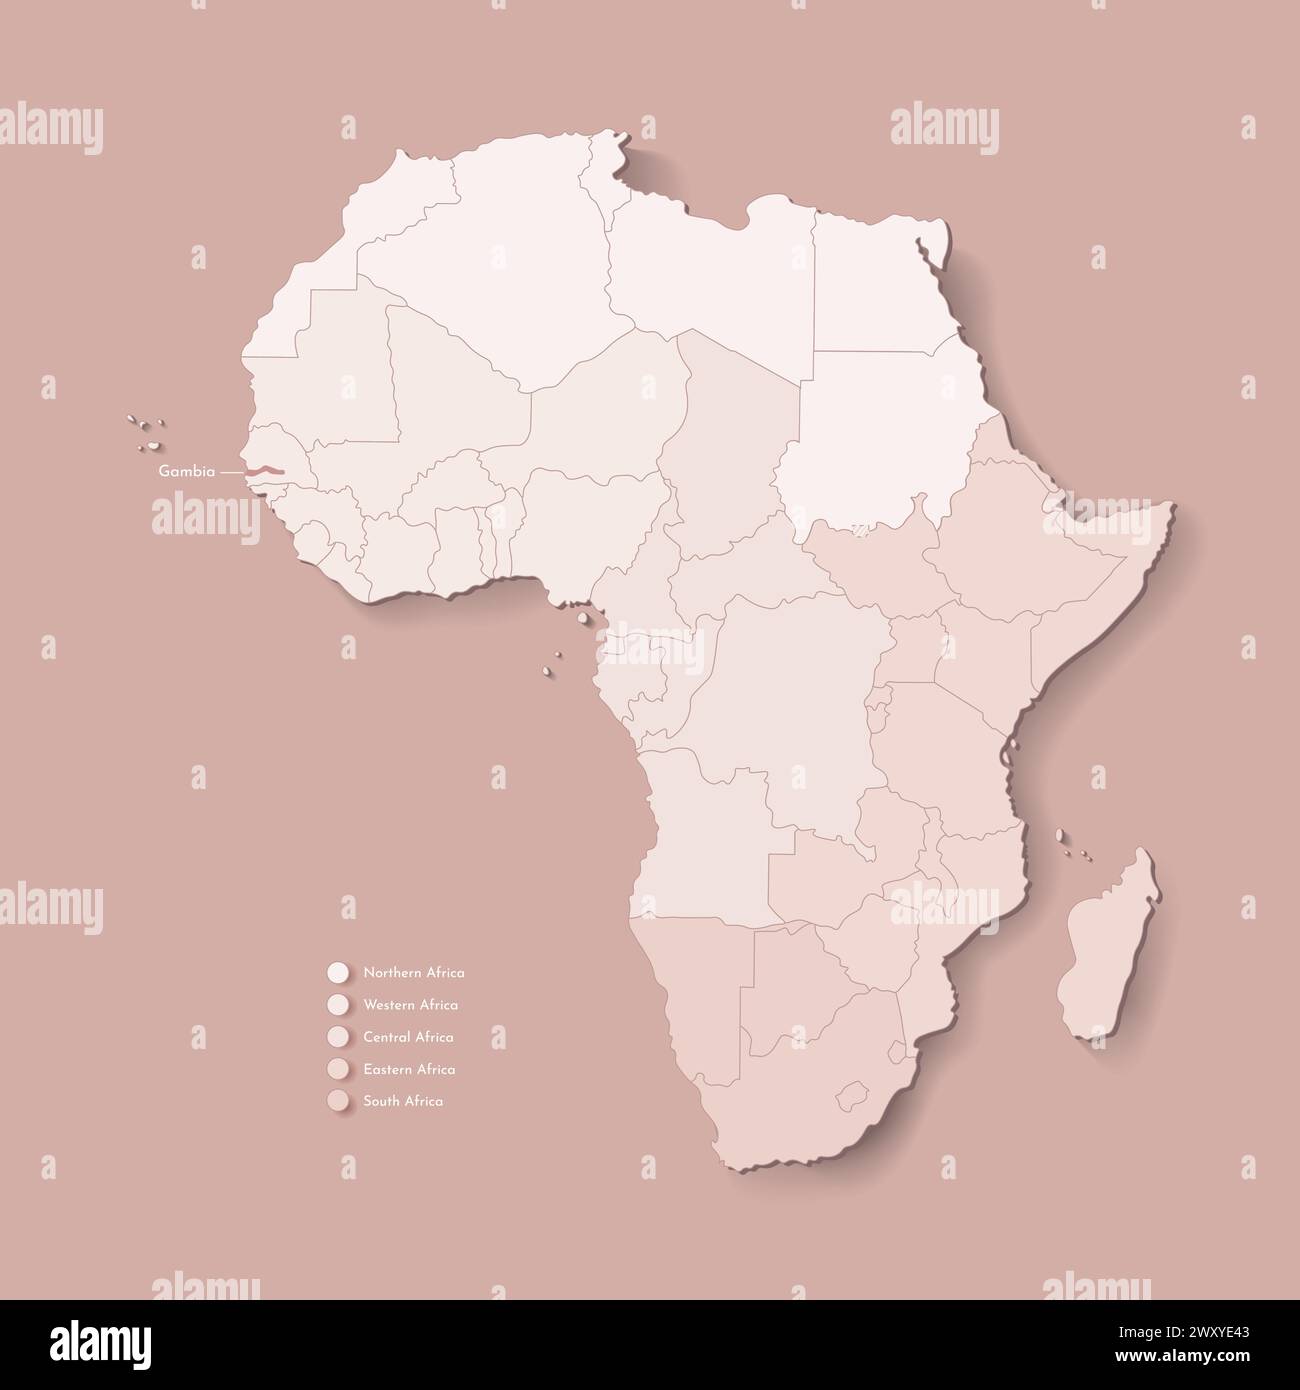 Illustrazione vettoriale con continente africano con confini di tutti gli stati e paese segnato Gambia. Mappa politica di colore marrone con occidentale, sud e. Illustrazione Vettoriale